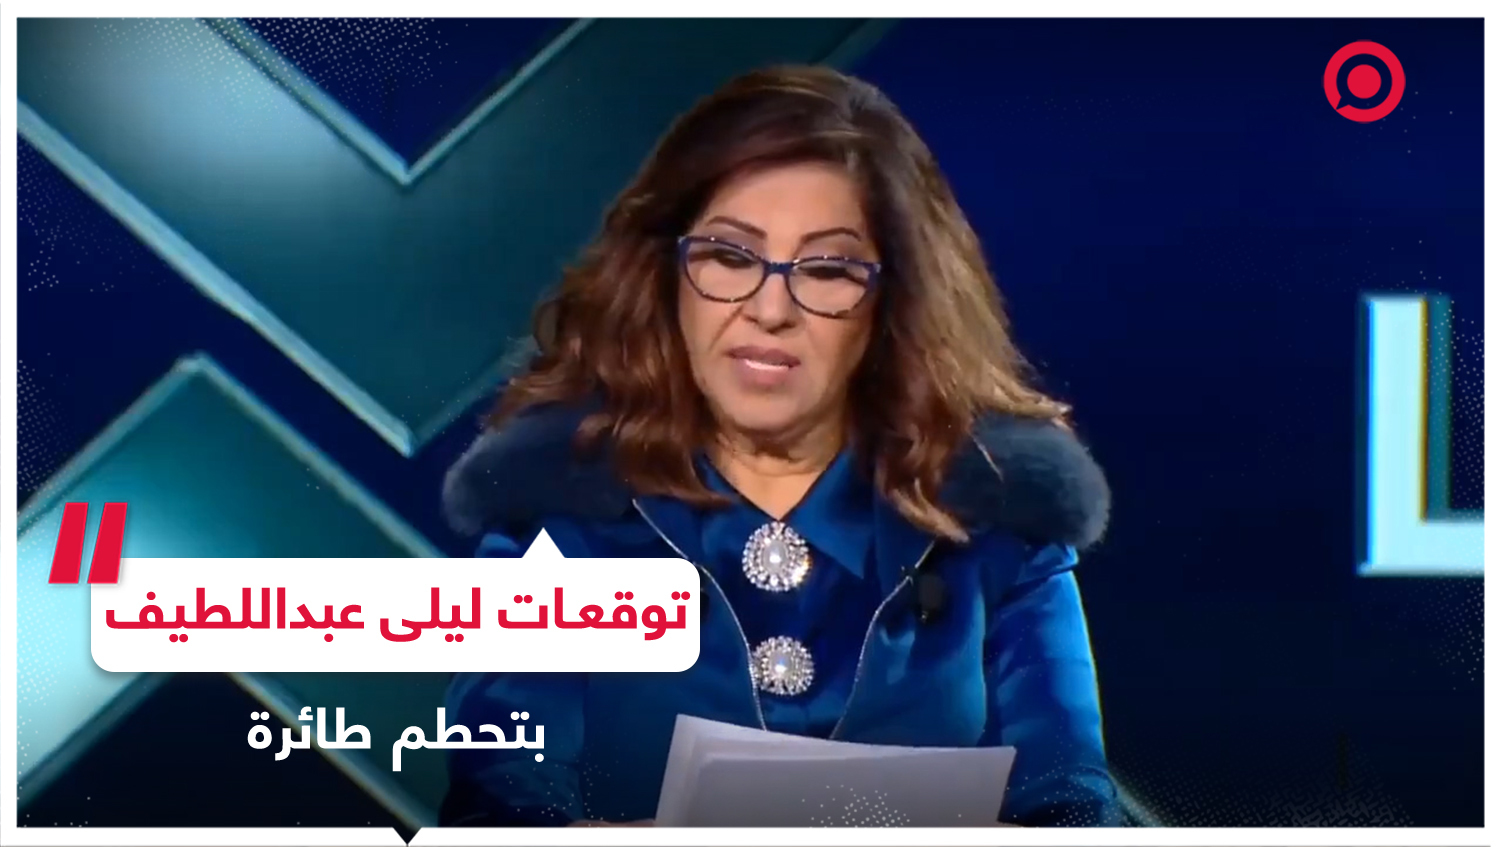 ما حقيقة "تنبؤ" ليلى عبداللطيف بسقوط مروحية الرئيس الإيراني؟